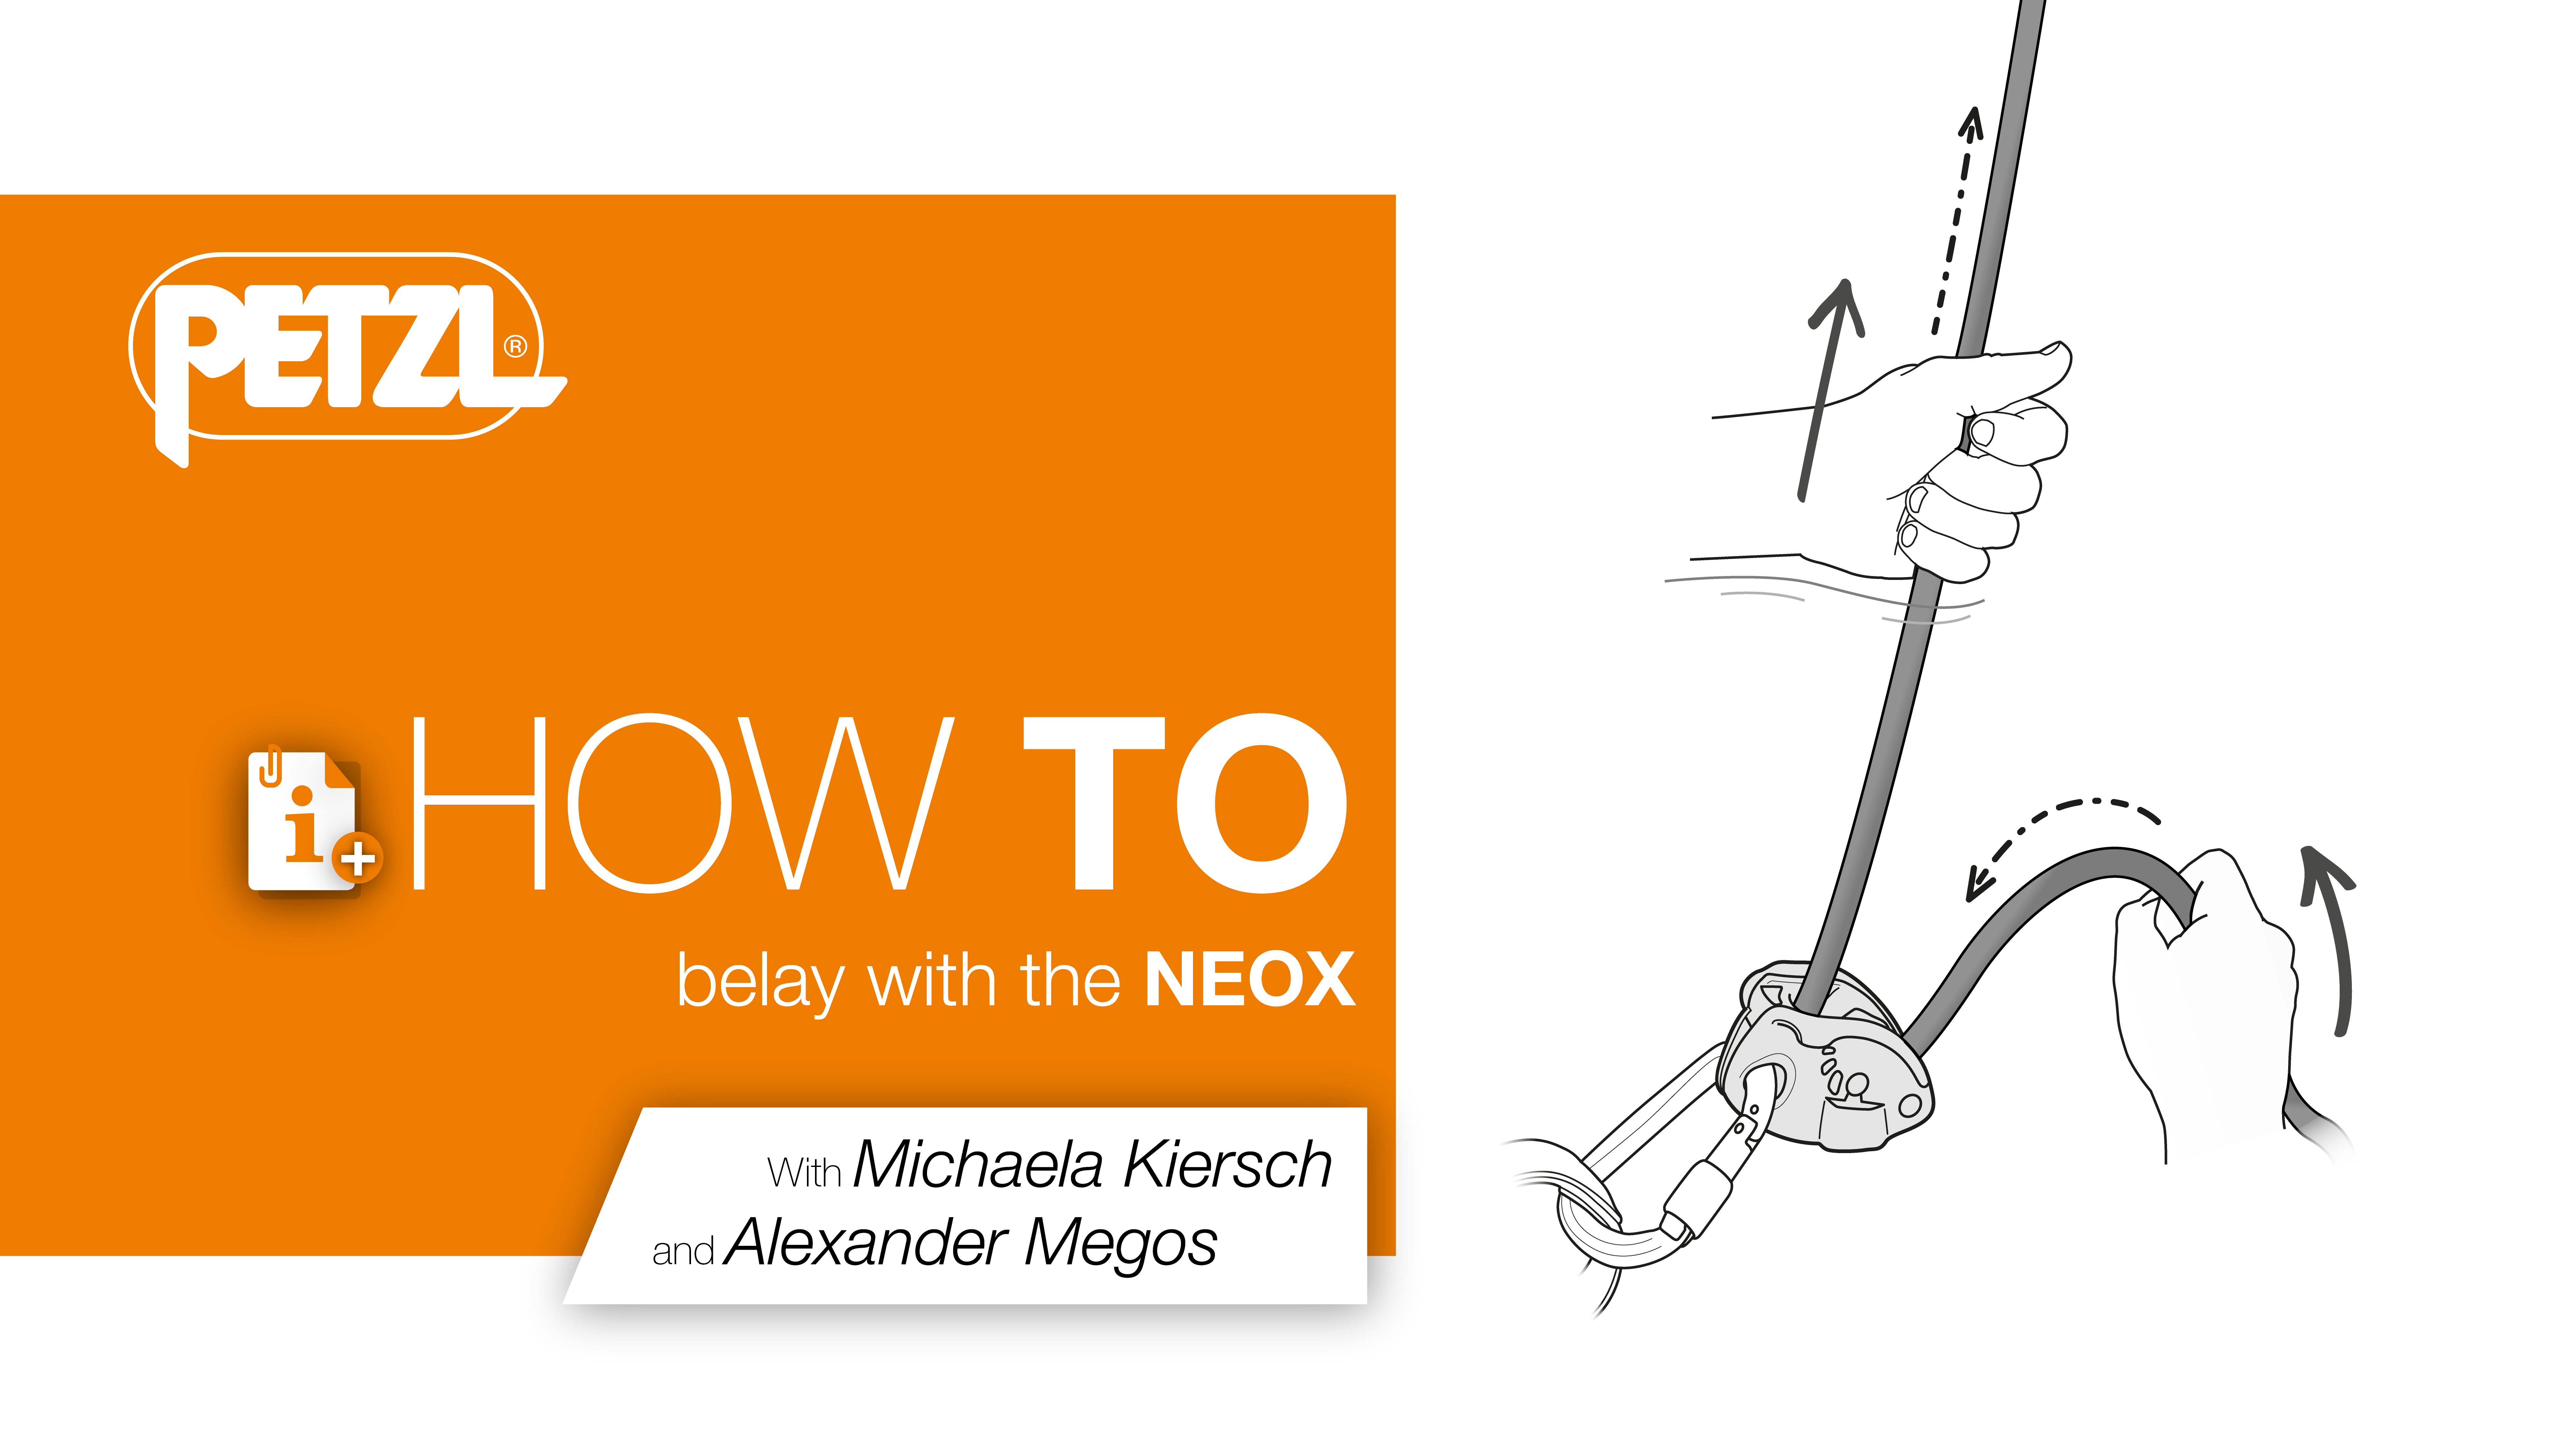 Come assicurare con NEOX